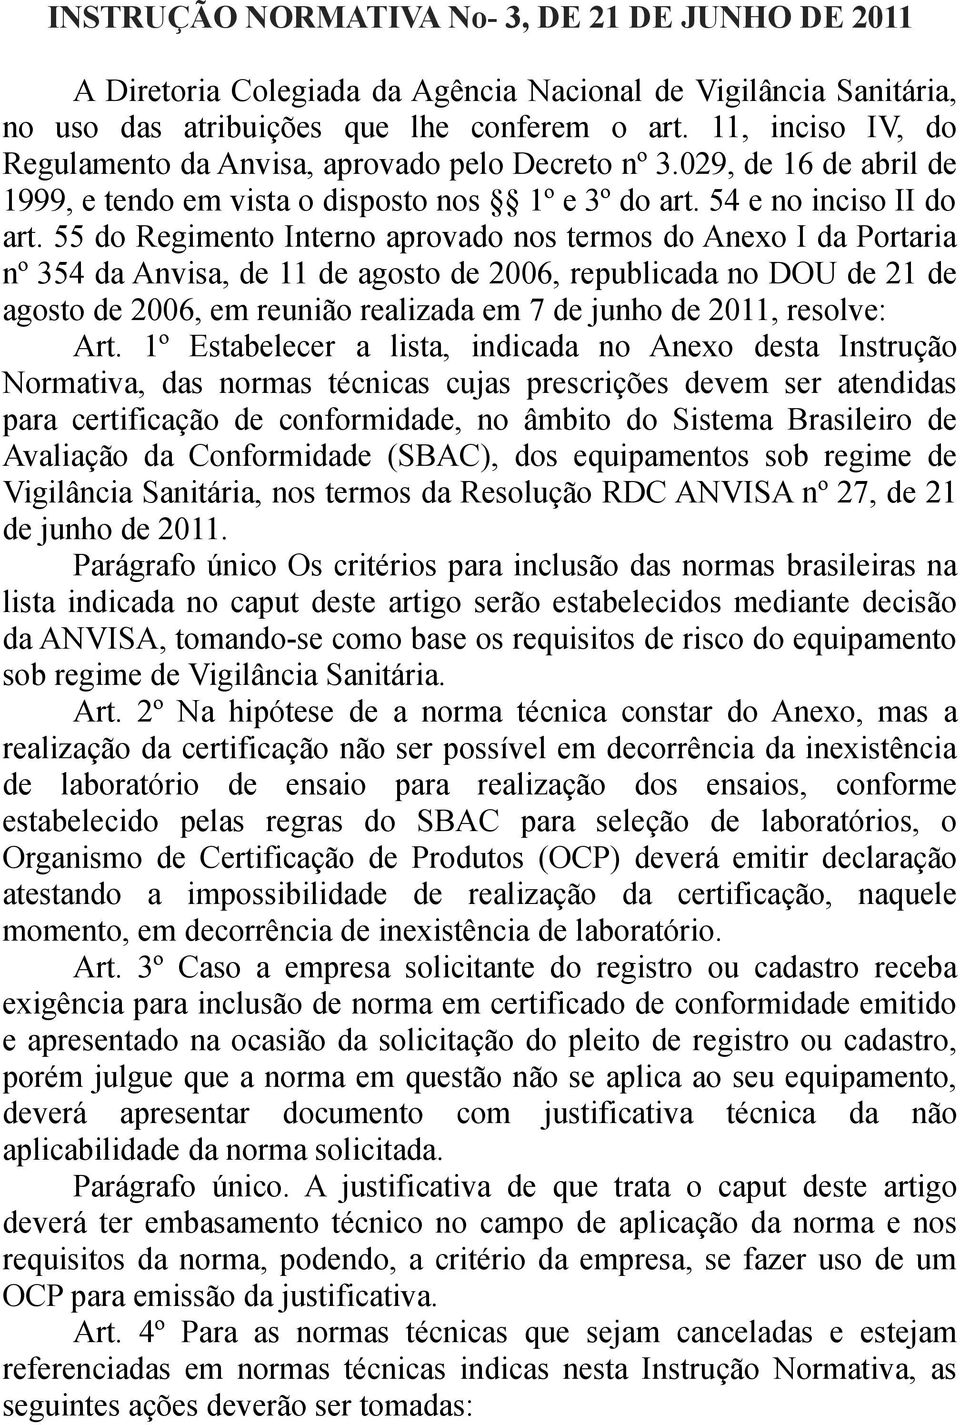 55 do Regimento Interno aprovado nos termos do Anexo I da Portaria nº 354 da Anvisa, de 11 de agosto de 2006, republicada no DOU de 21 de agosto de 2006, em reunião realizada em 7 de junho de 2011,